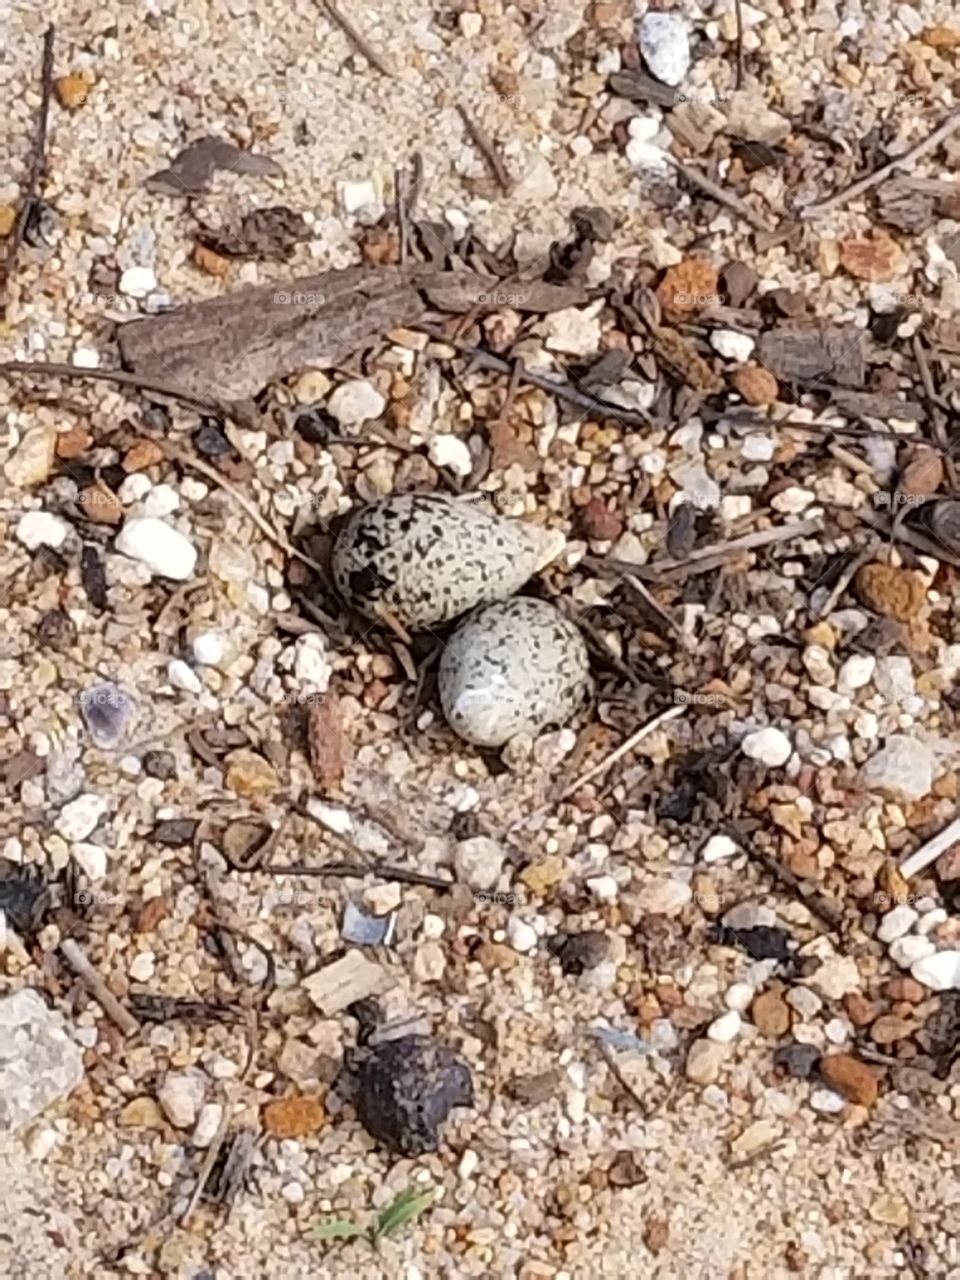 Eggs on the beach